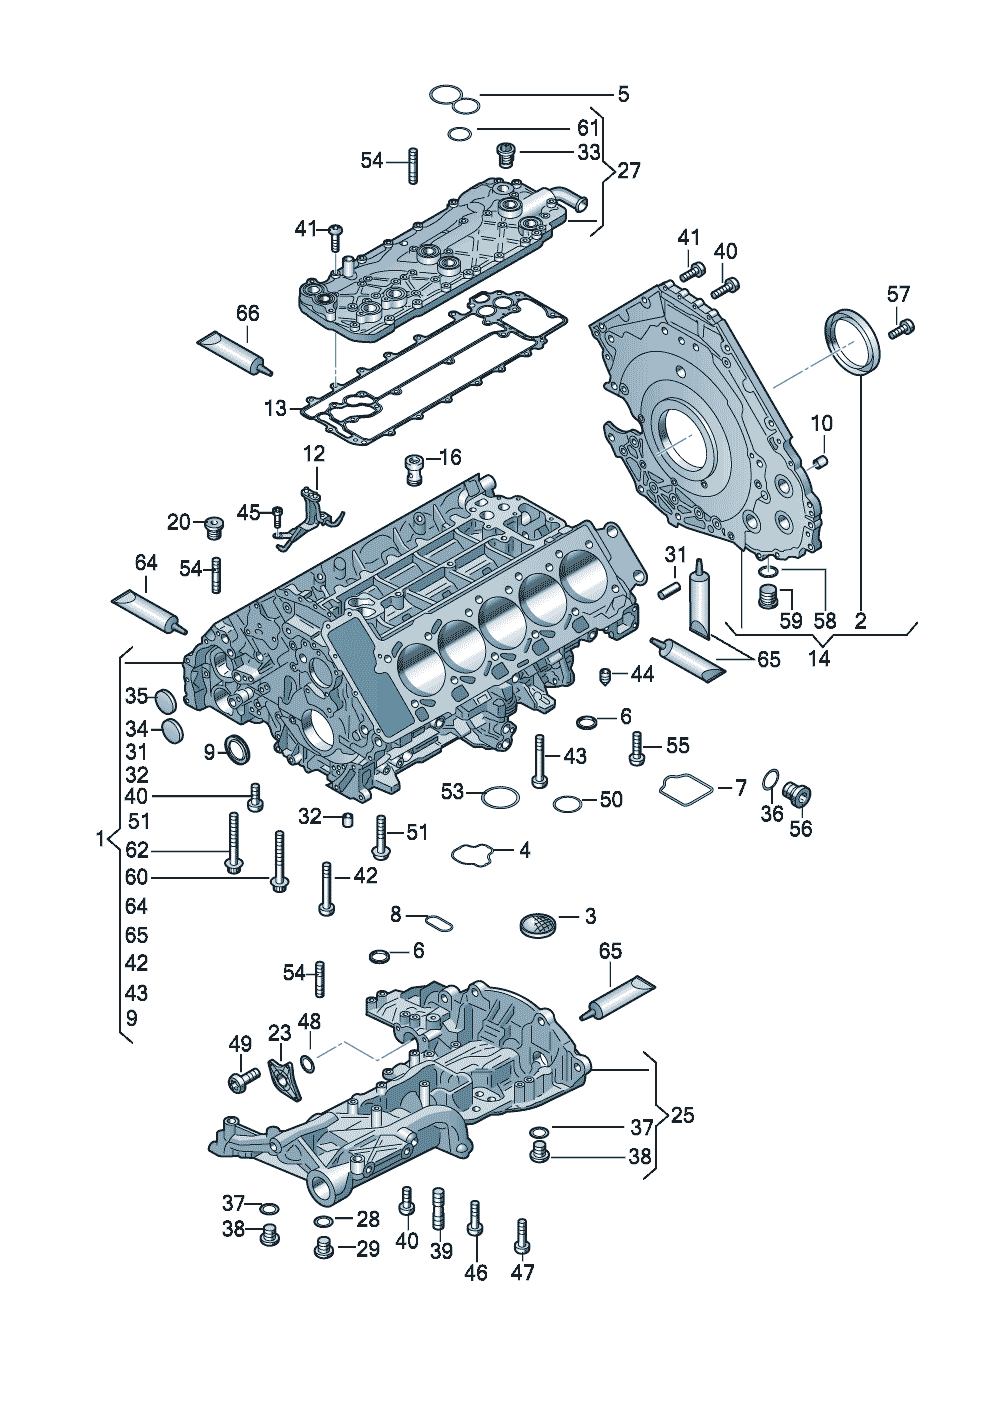 ÖlwanneDichtflanschZylinderkurbelgehäuse 5,2 Ltr. - Audi R8/Spyder - r8